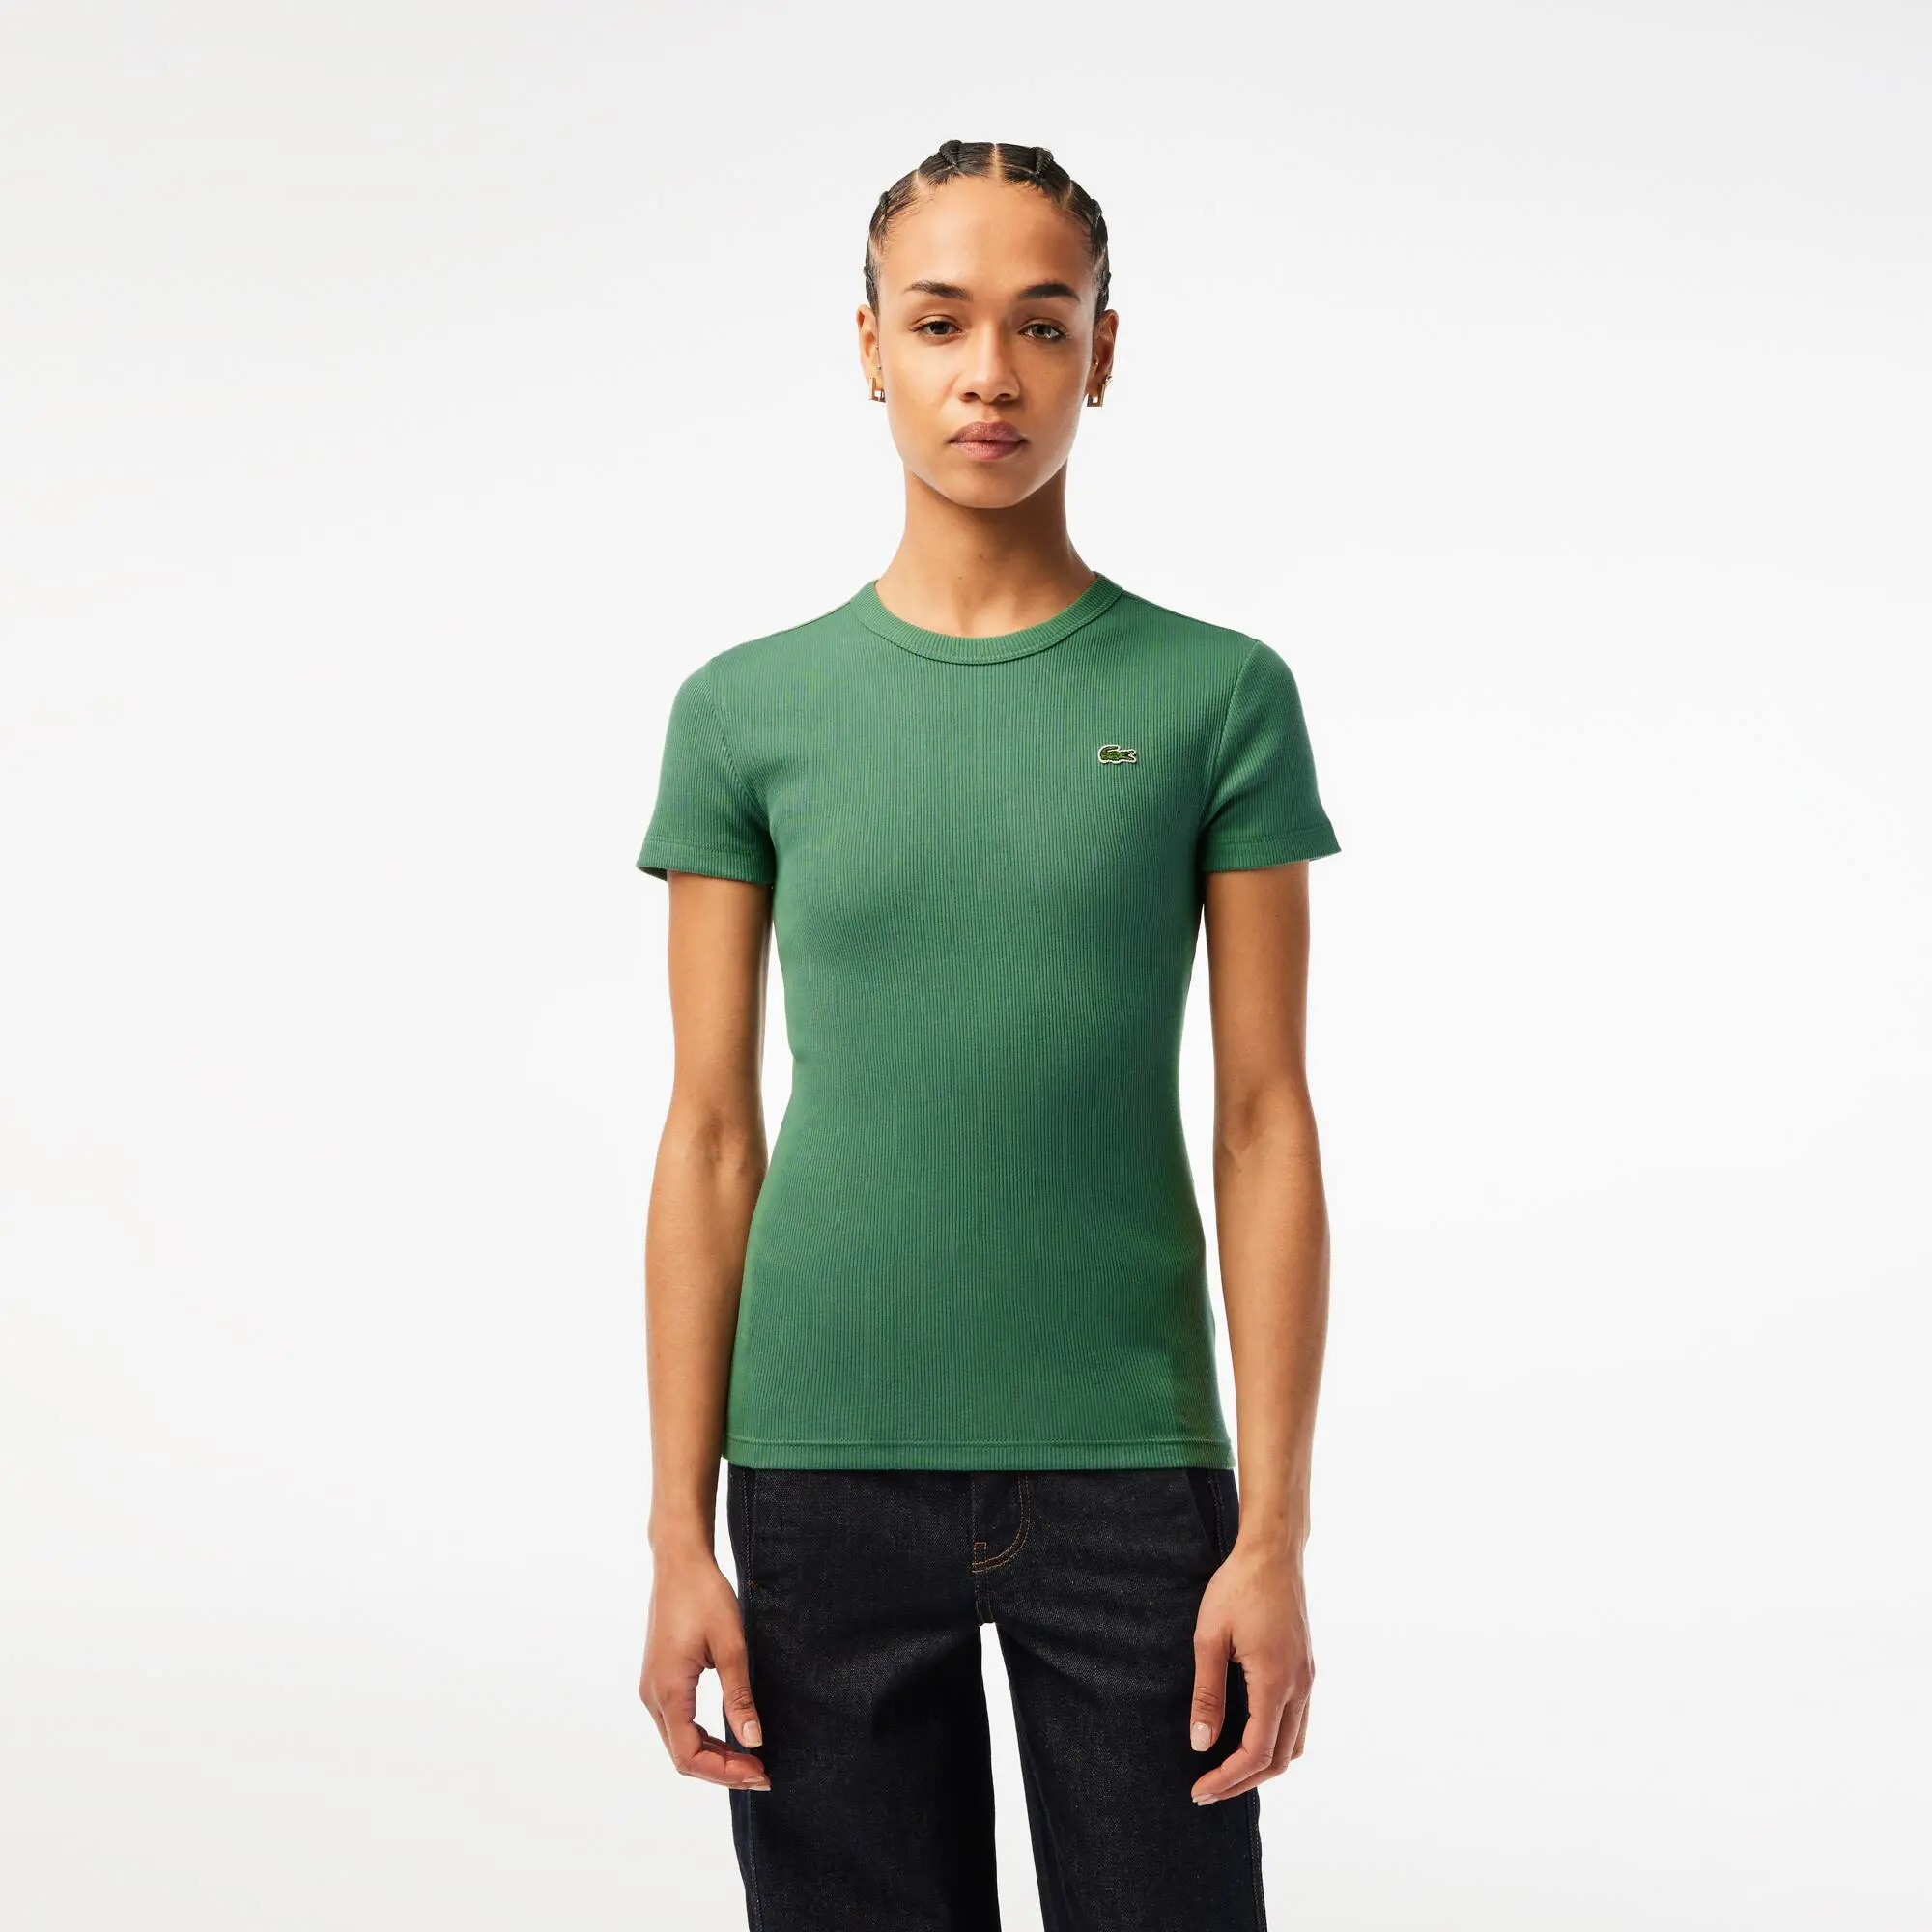 Lacoste T-shirt femme Lacoste slim fit en coton biologique. 1